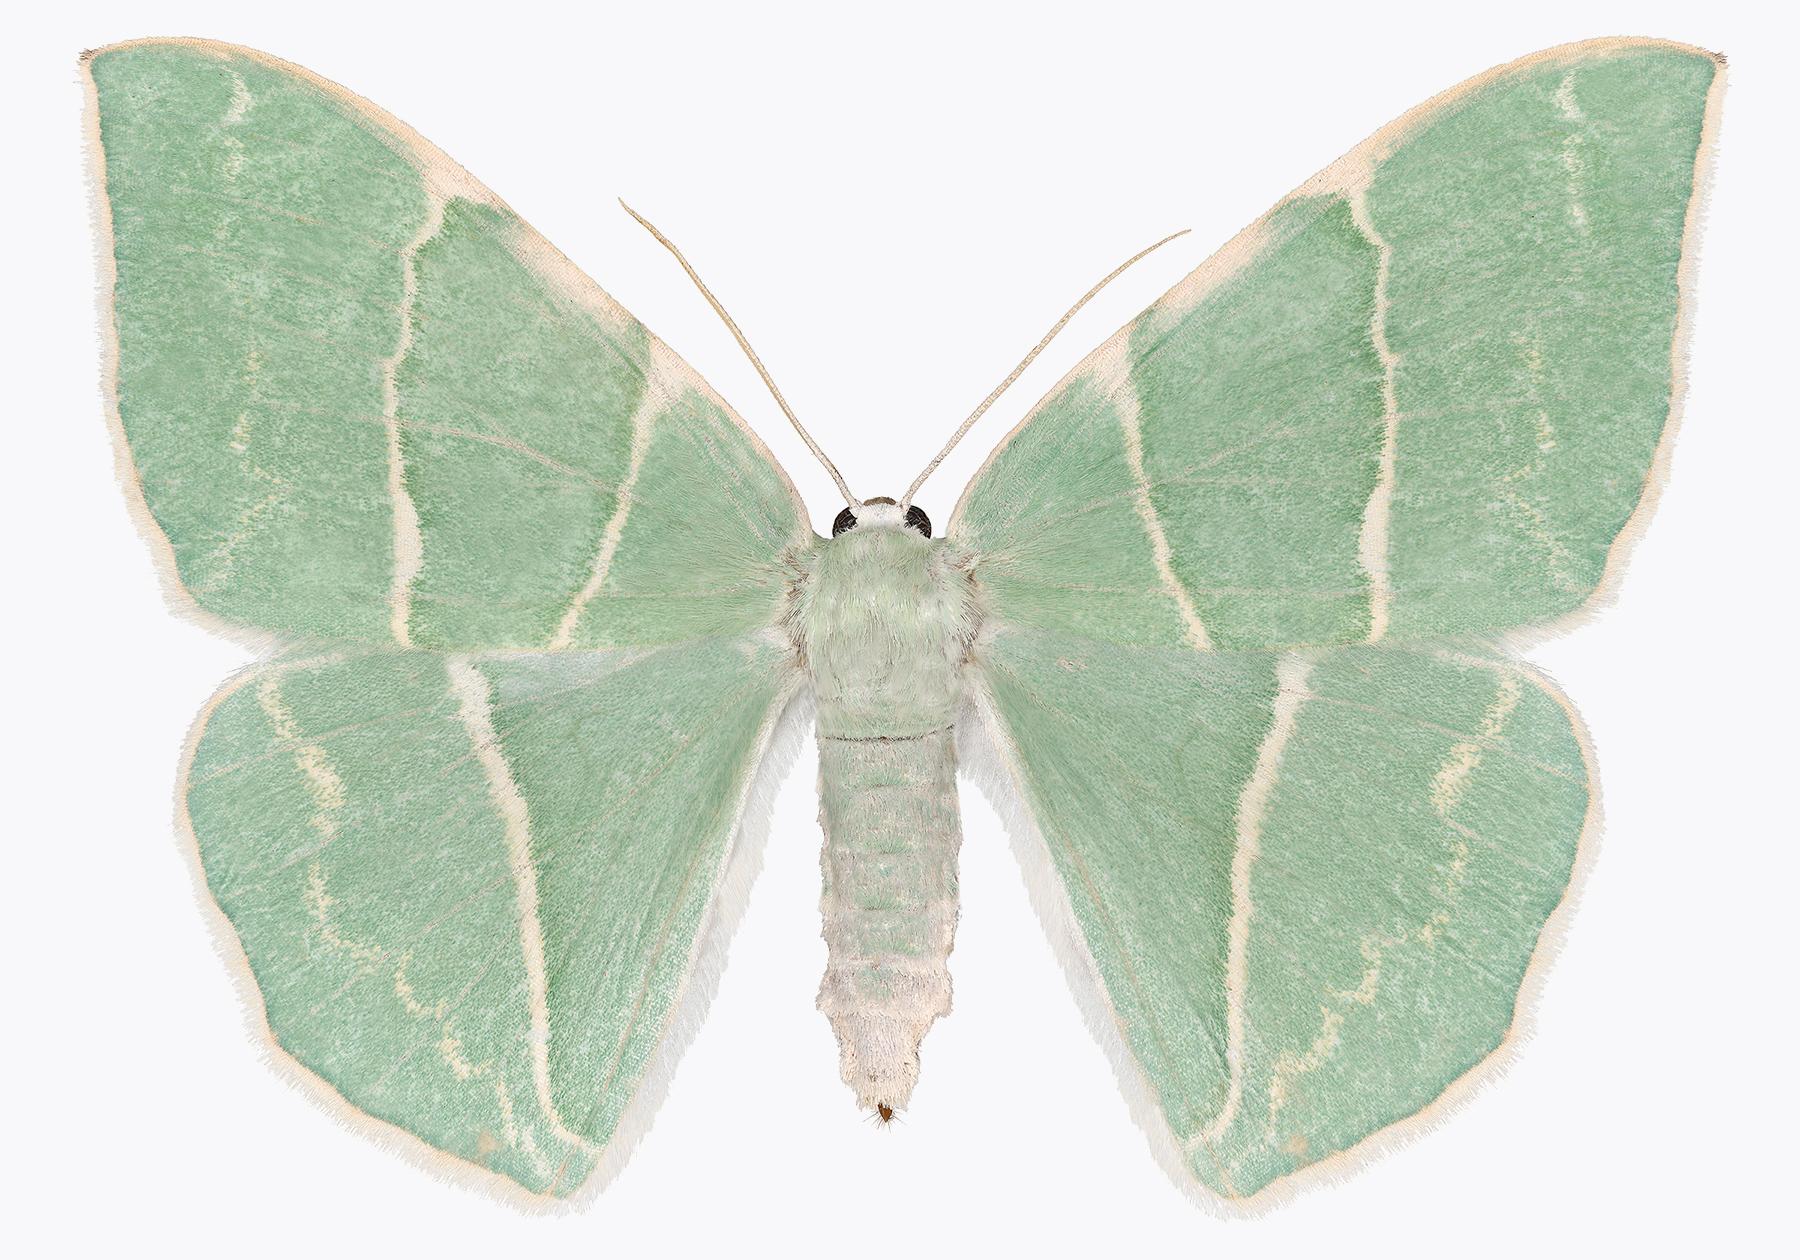 Joseph Scheer Color Photograph – Geometra Glaucaria, Insektenfotografie, Hellgrnes, elfenbeinfarbenes Moth auf Wei